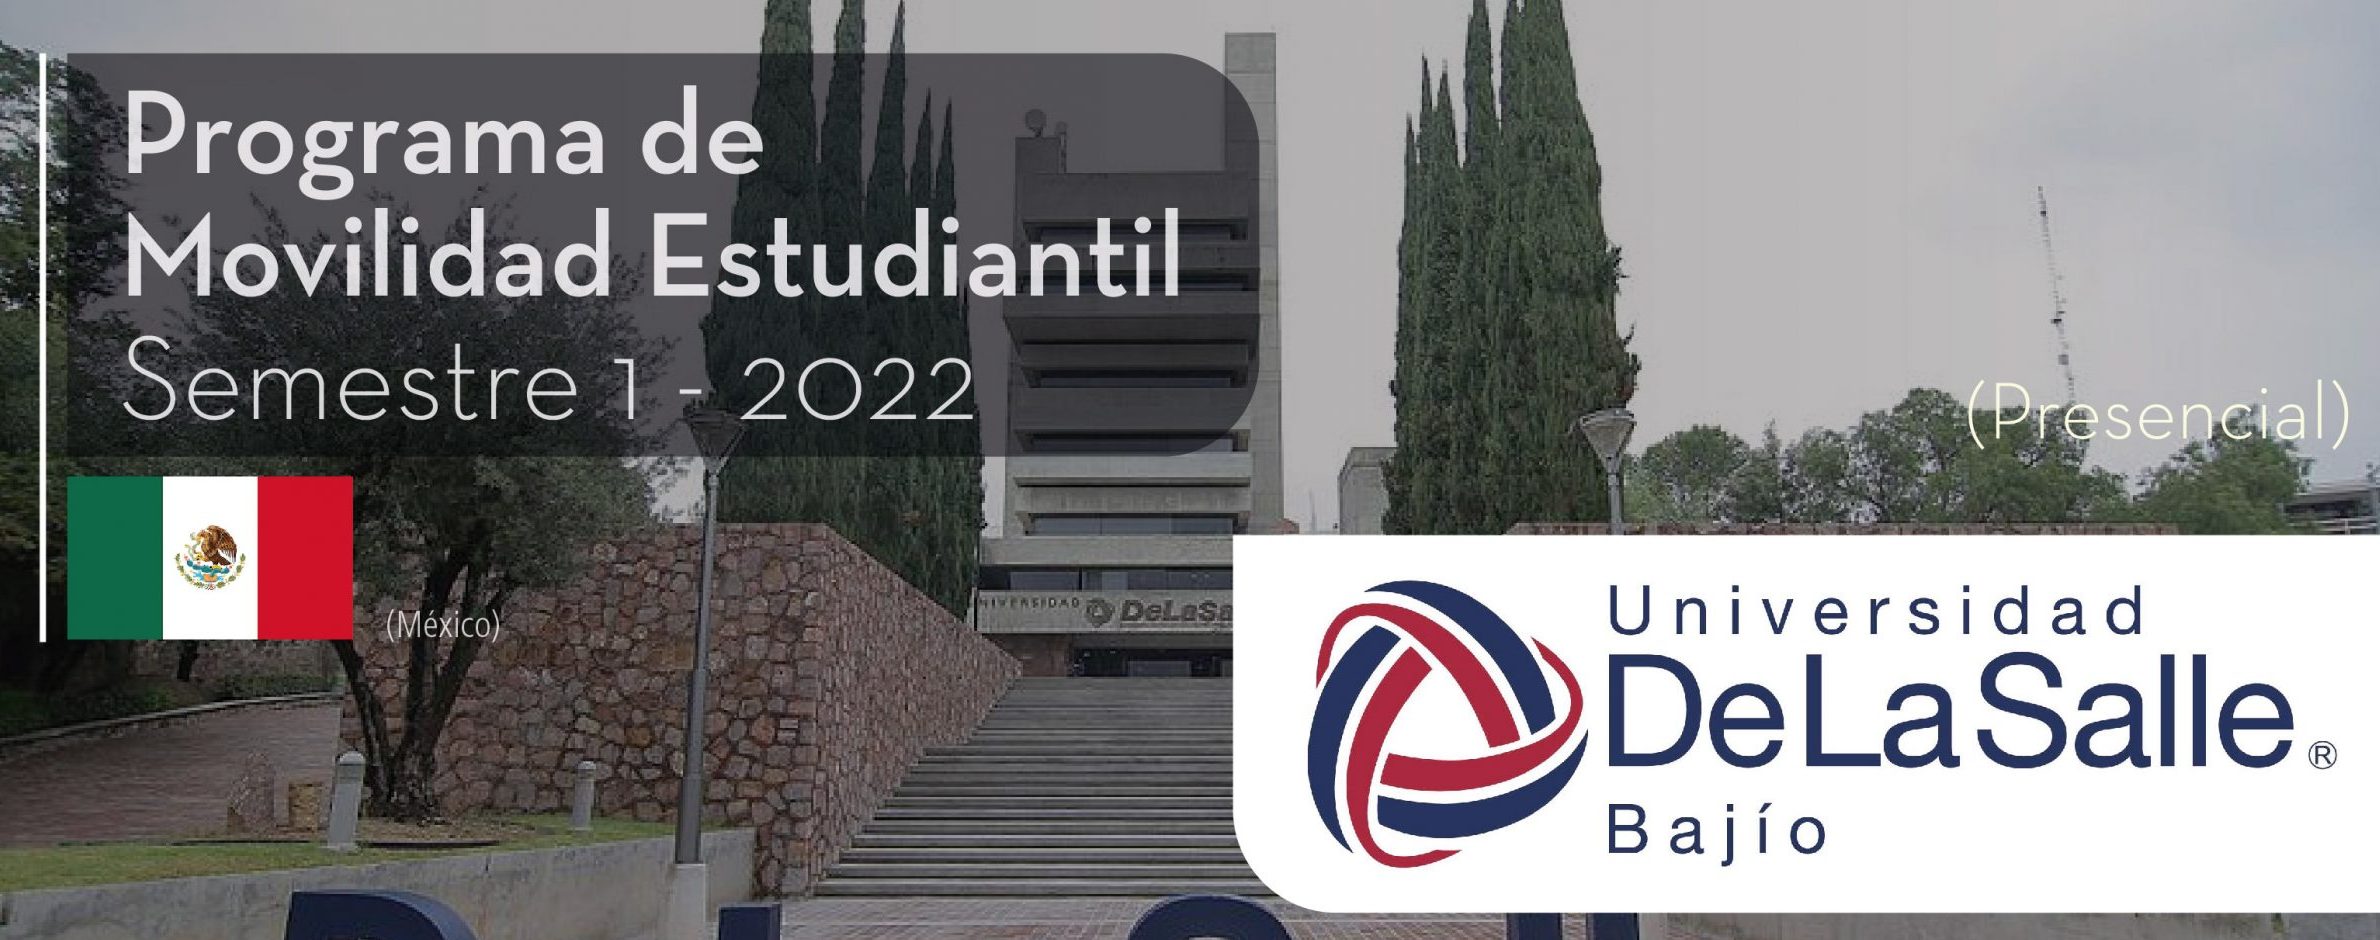 La Universidad de la Salle Bajio de México es parte del Programa de Movilidad Virtual Estudiantil UCB por el Mundo.